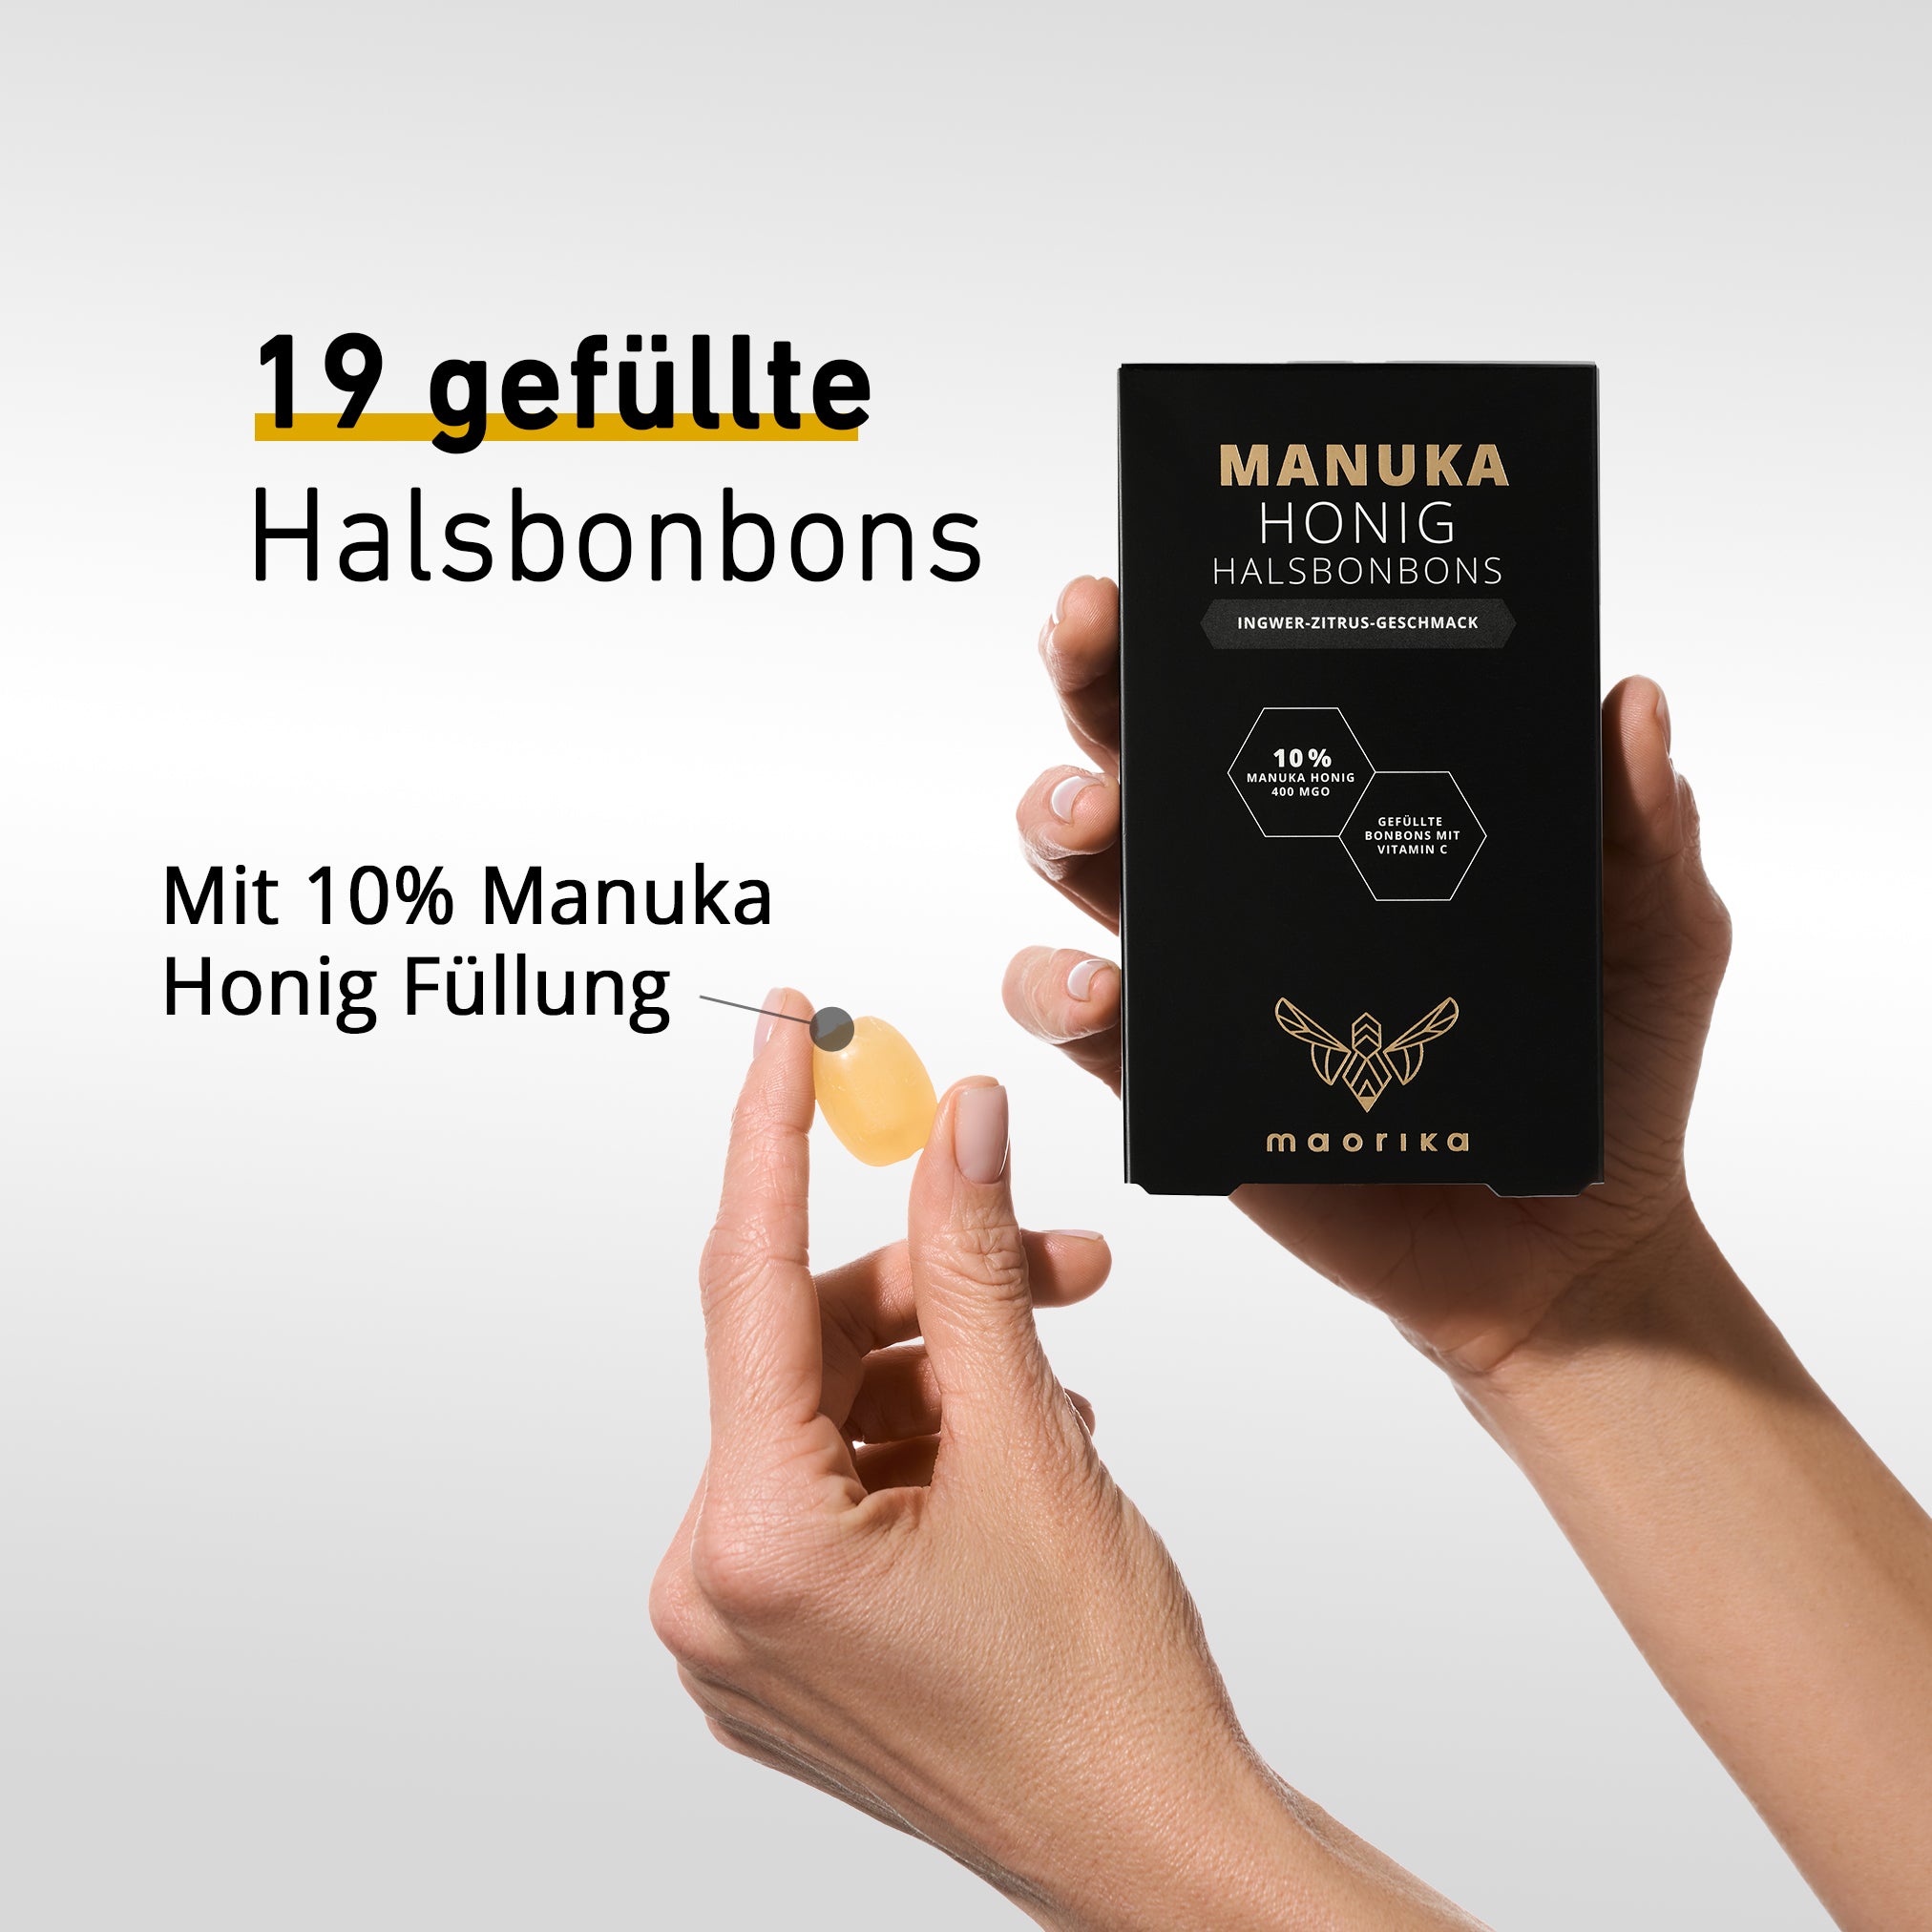 Manuka Halsbonbons - Ingwer Zitrus